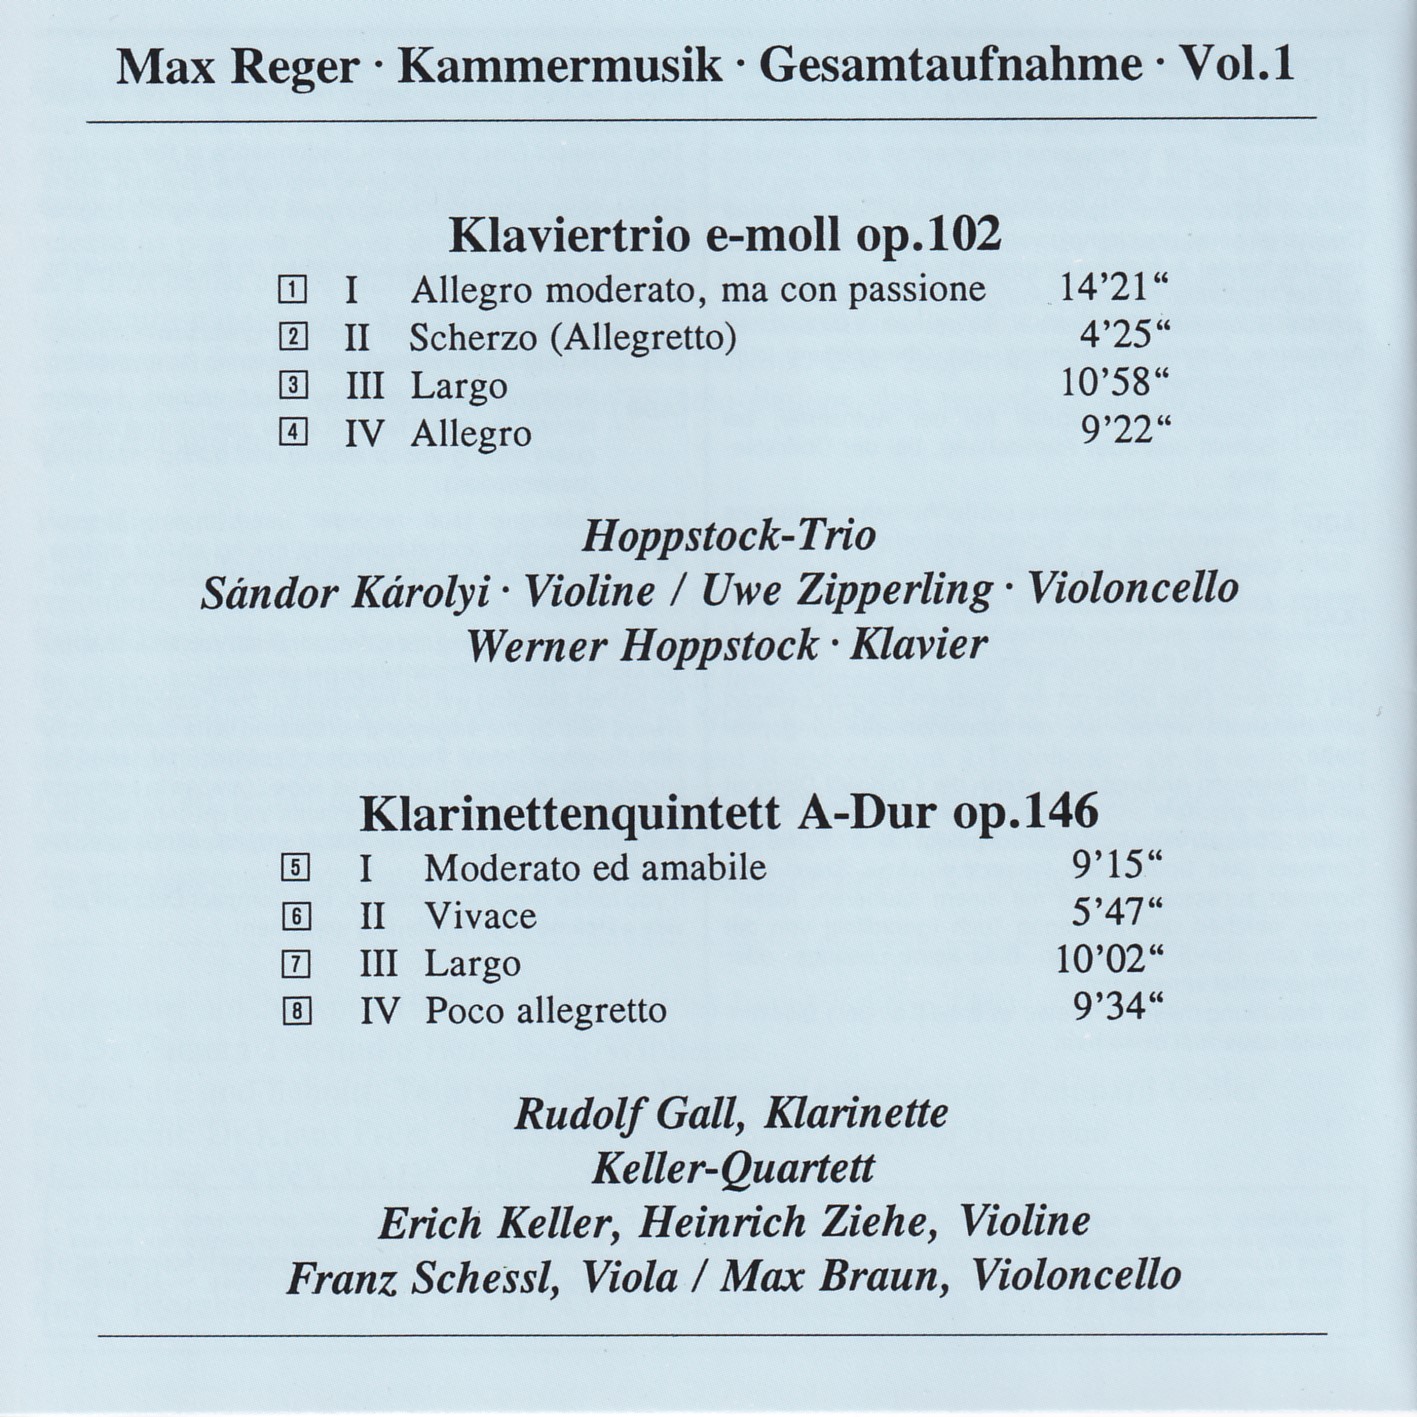 Max Reger - Kammermusik komplett Vol. 1